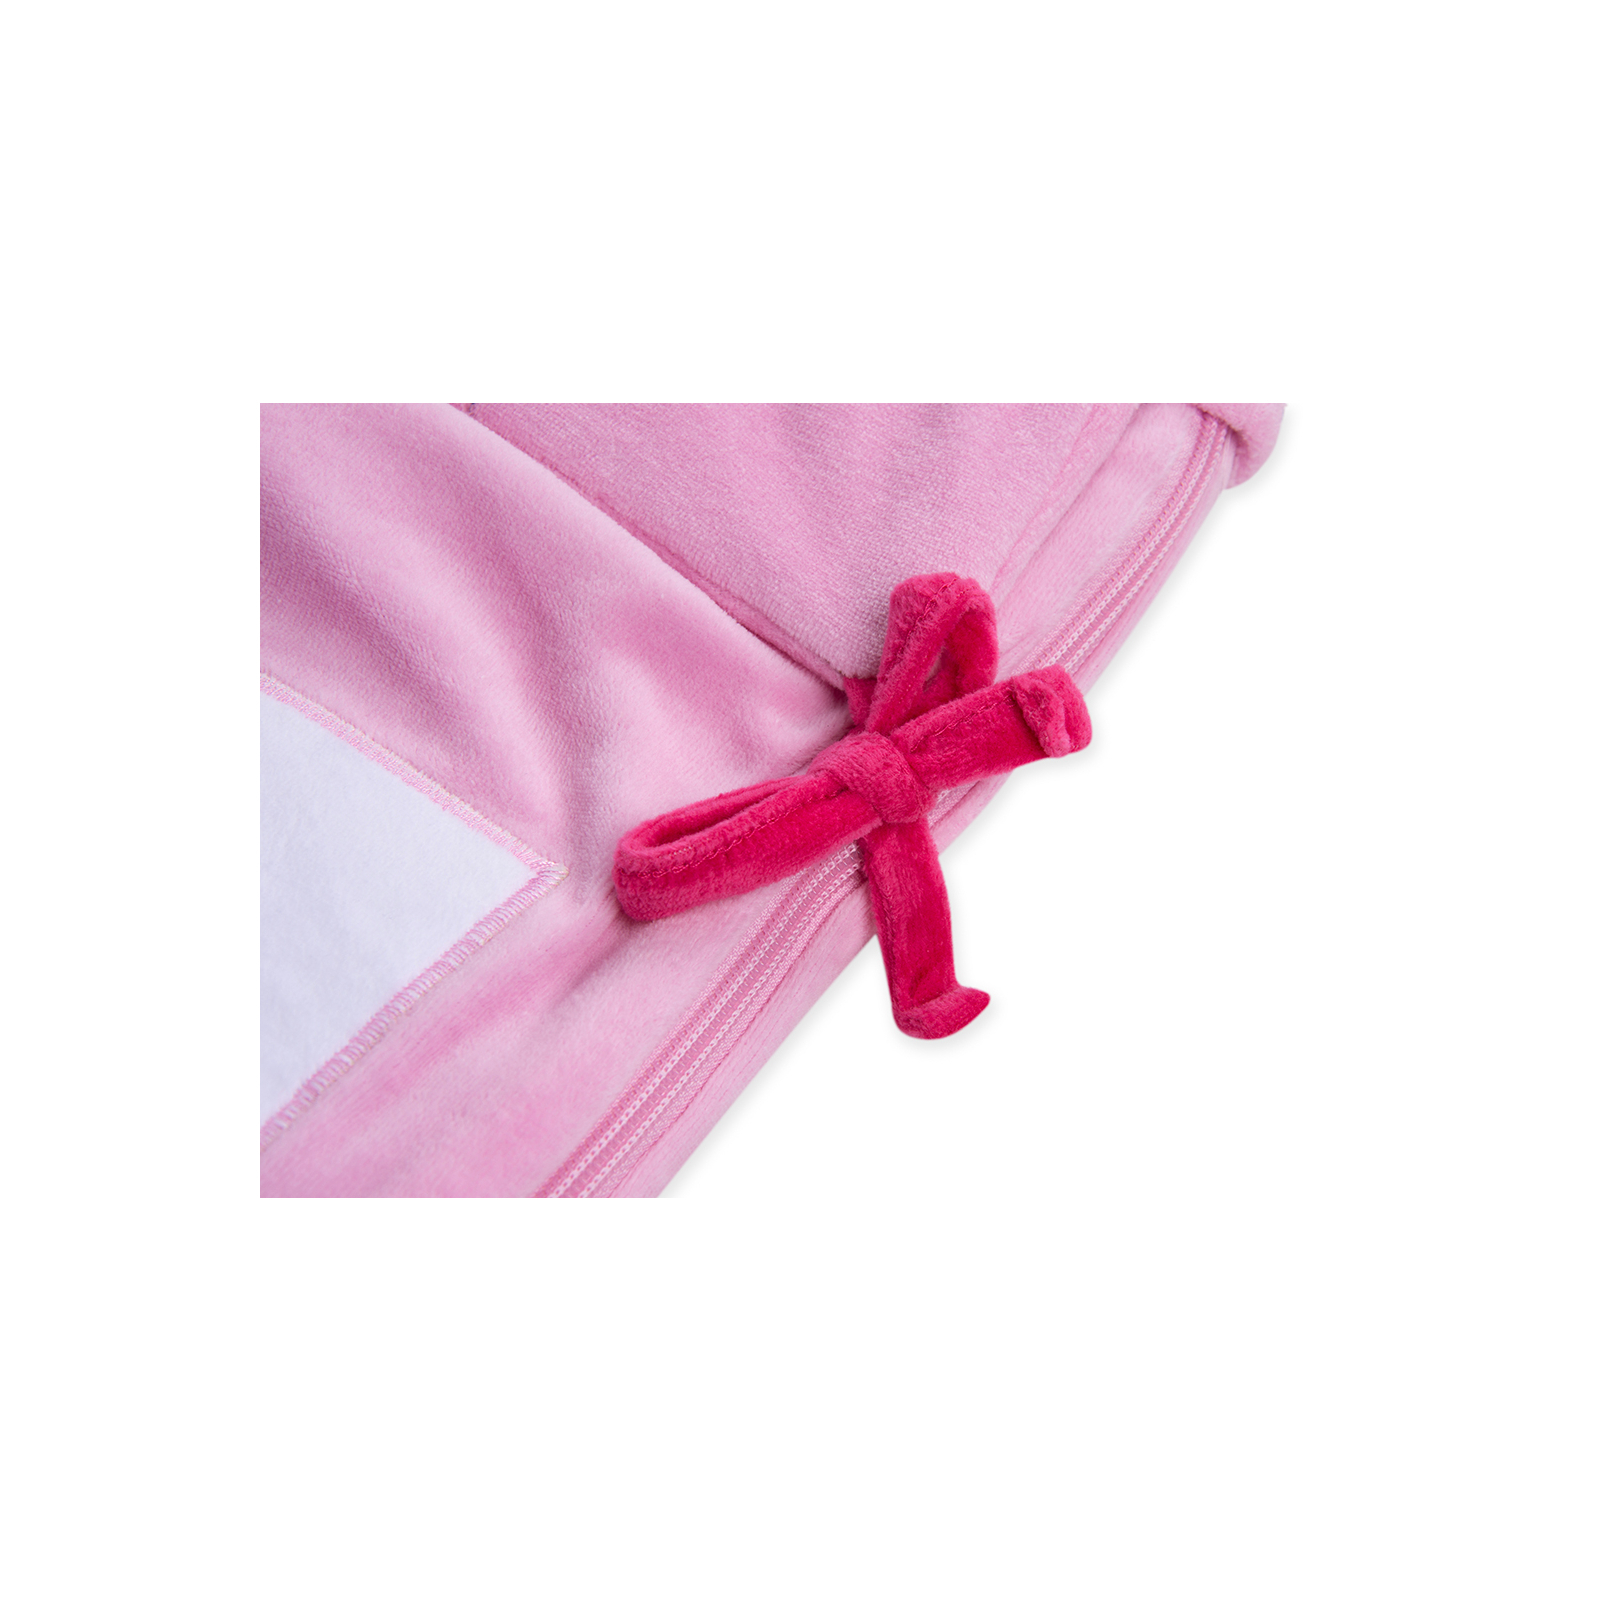 Спальный конверт Luvena Fortuna розовый многофункциональный с рисунком слоненка (G8988) изображение 6